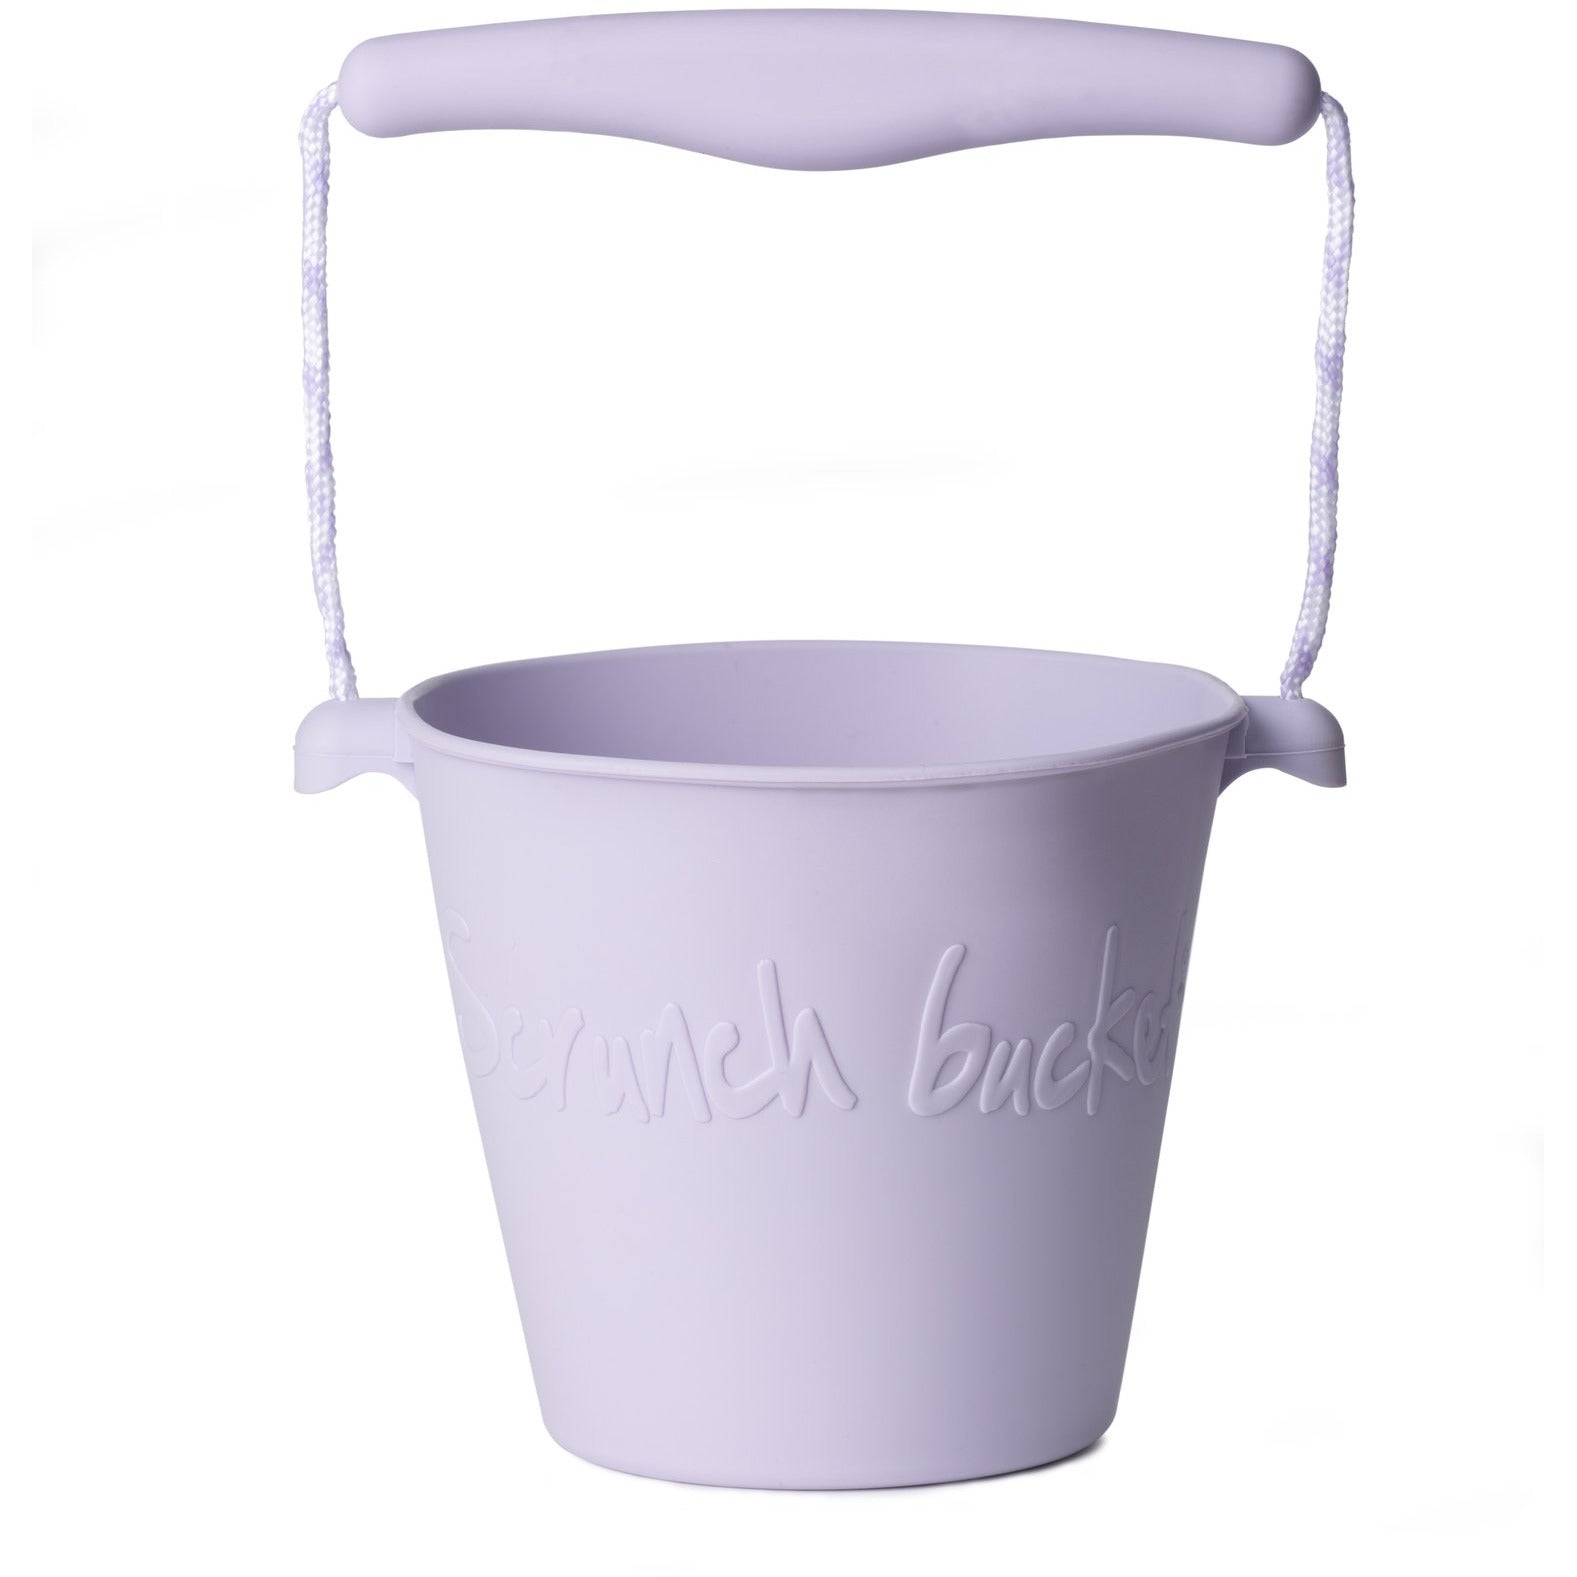 Scrunch Beach Bucket, Foldable - Dusty Purple